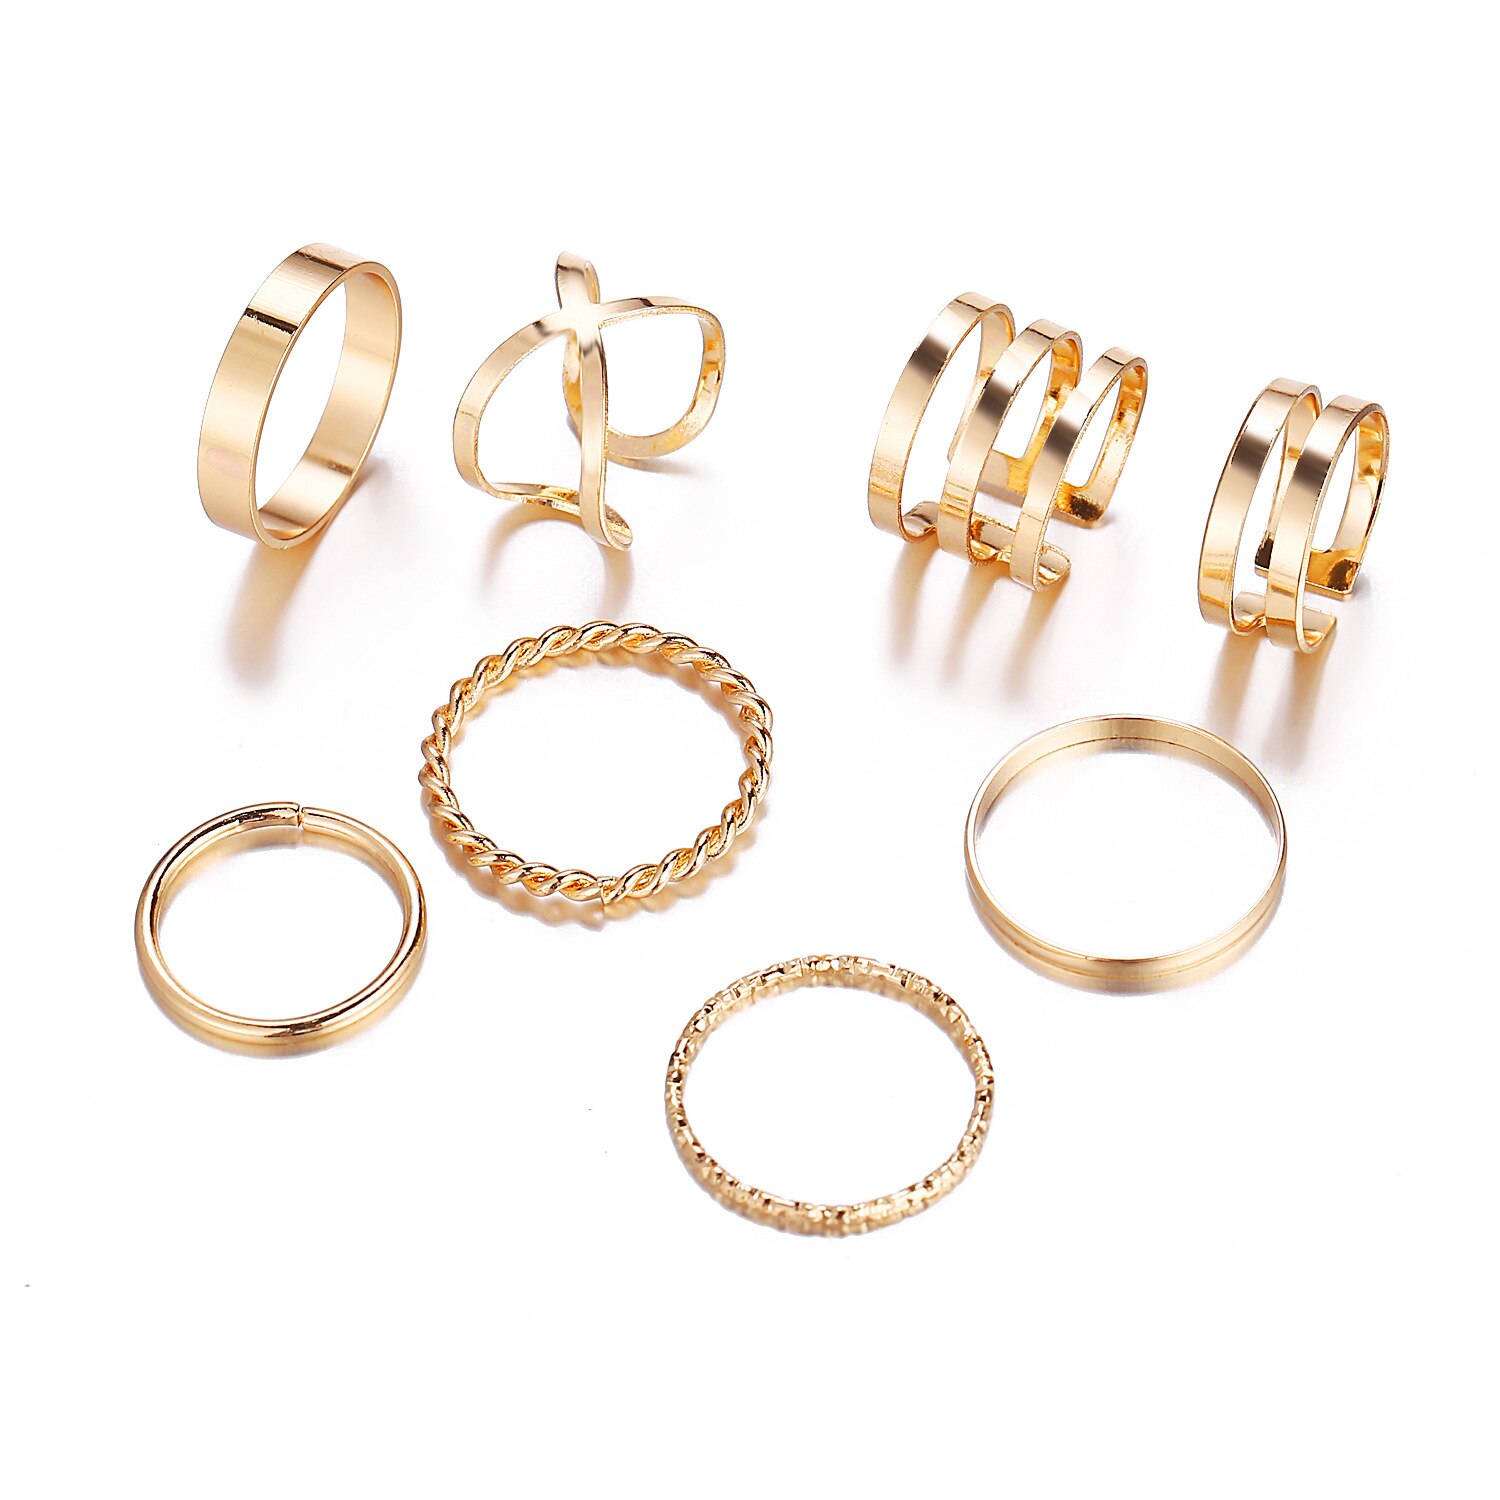 8 Stks/set Bohemian Vintage Ronde Hollow Geometrische Ringen Voor Vrouwen Mode Cross Twist Open Ring Knuckle Vinger Ringen Sieraden: Gold